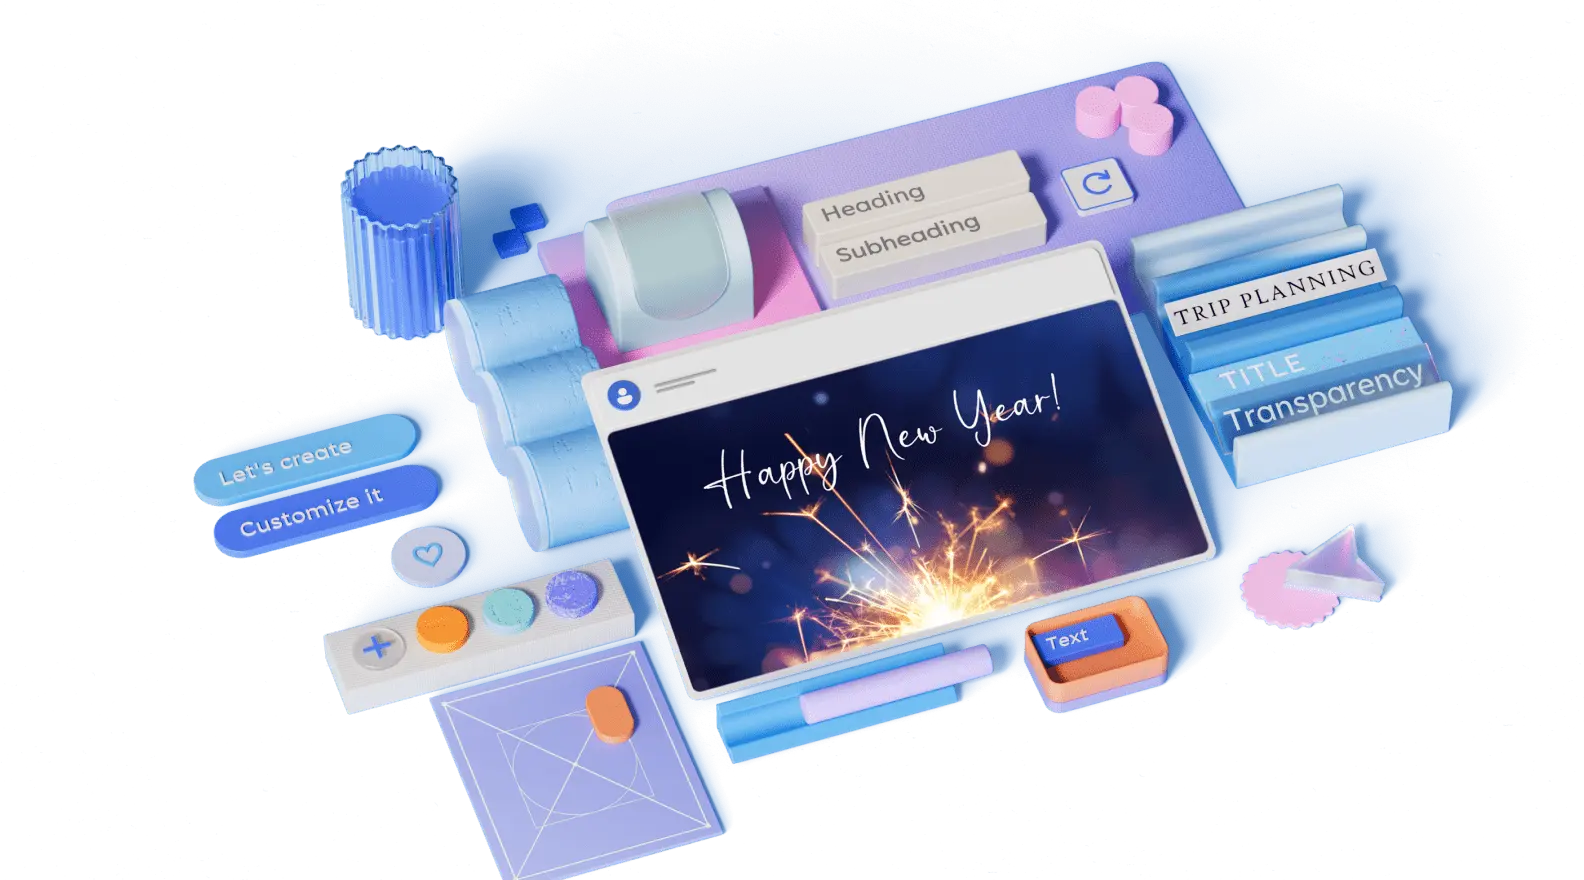 Szablon z fajerwerkami i życzeniami szczęśliwego nowego roku otoczony elementami projektu 3D